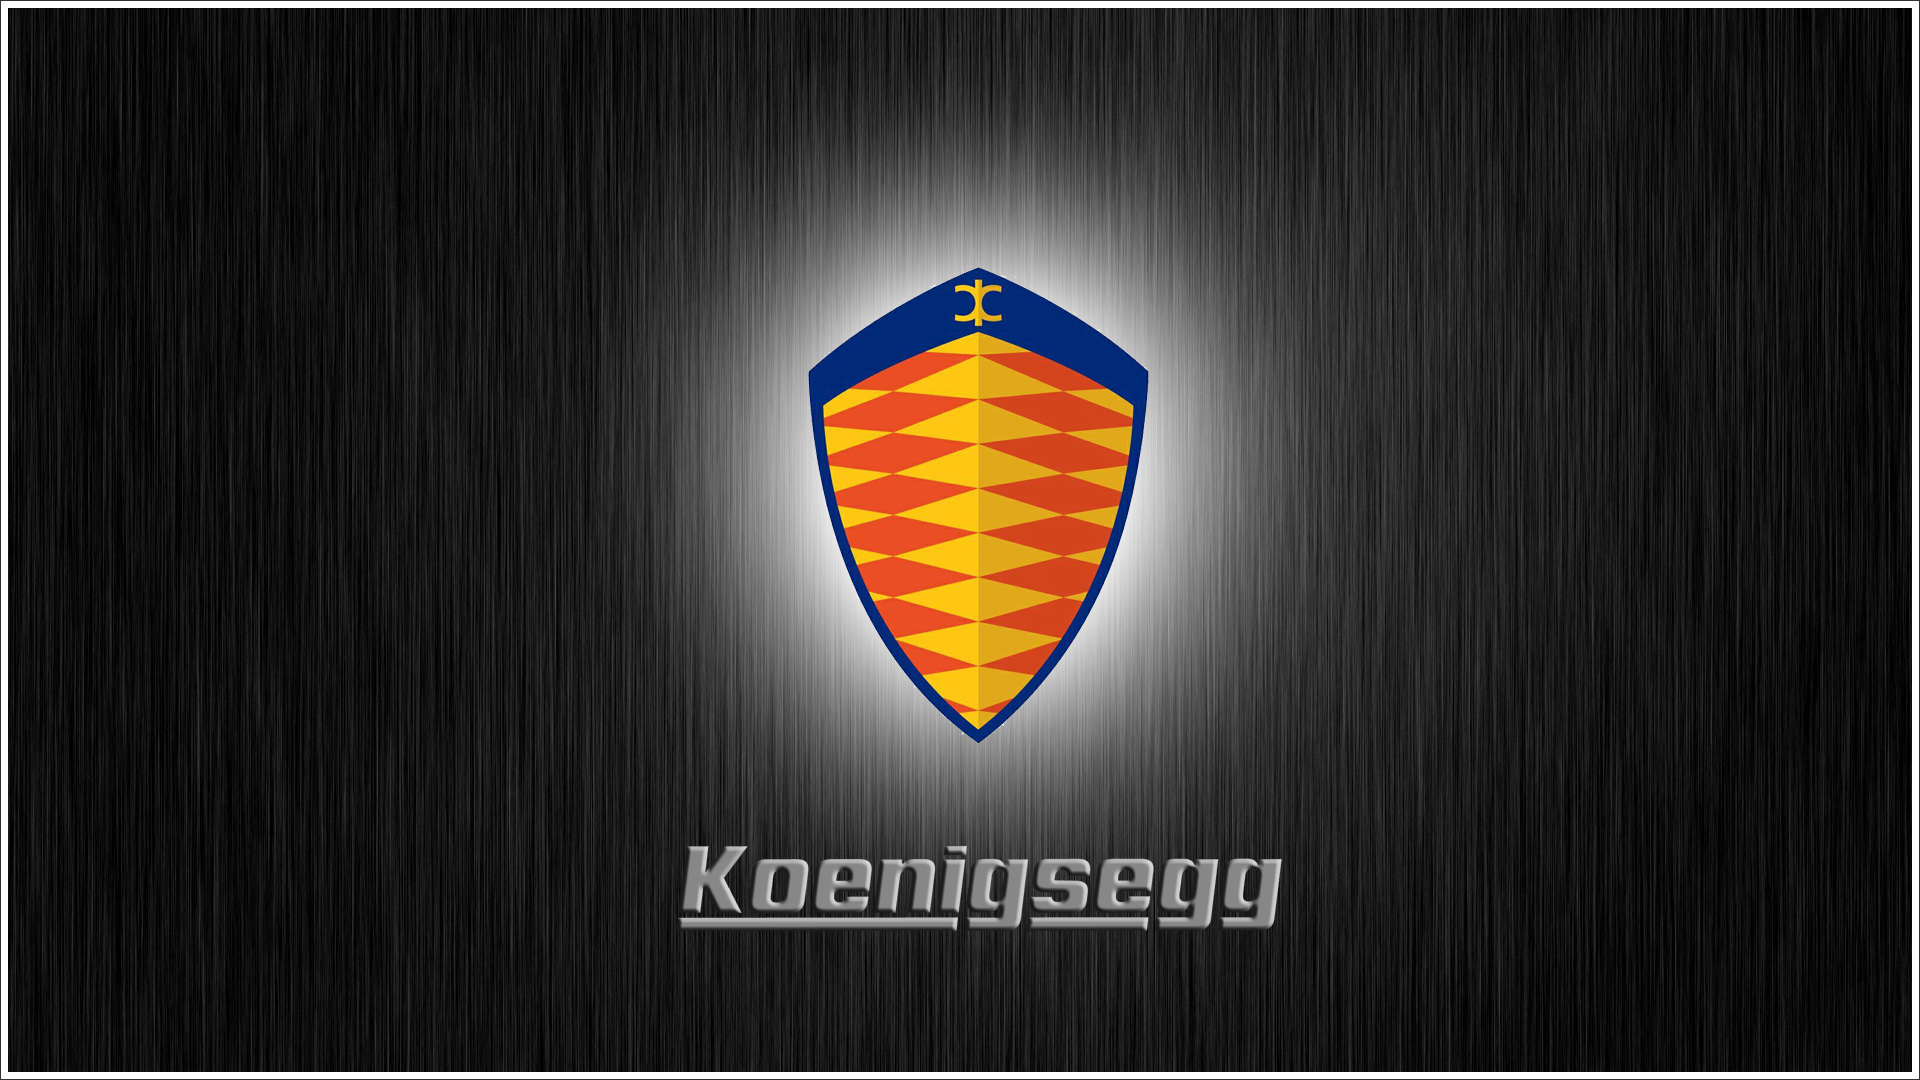 Koenigsegg Emblem Wallpaper